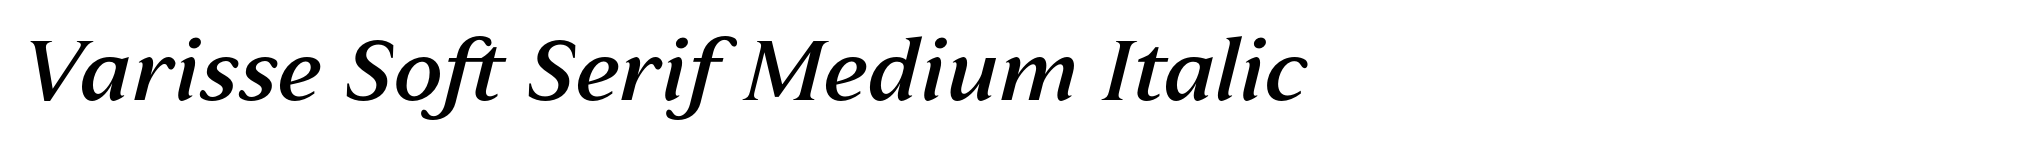 Varisse Soft Serif Medium Italic image